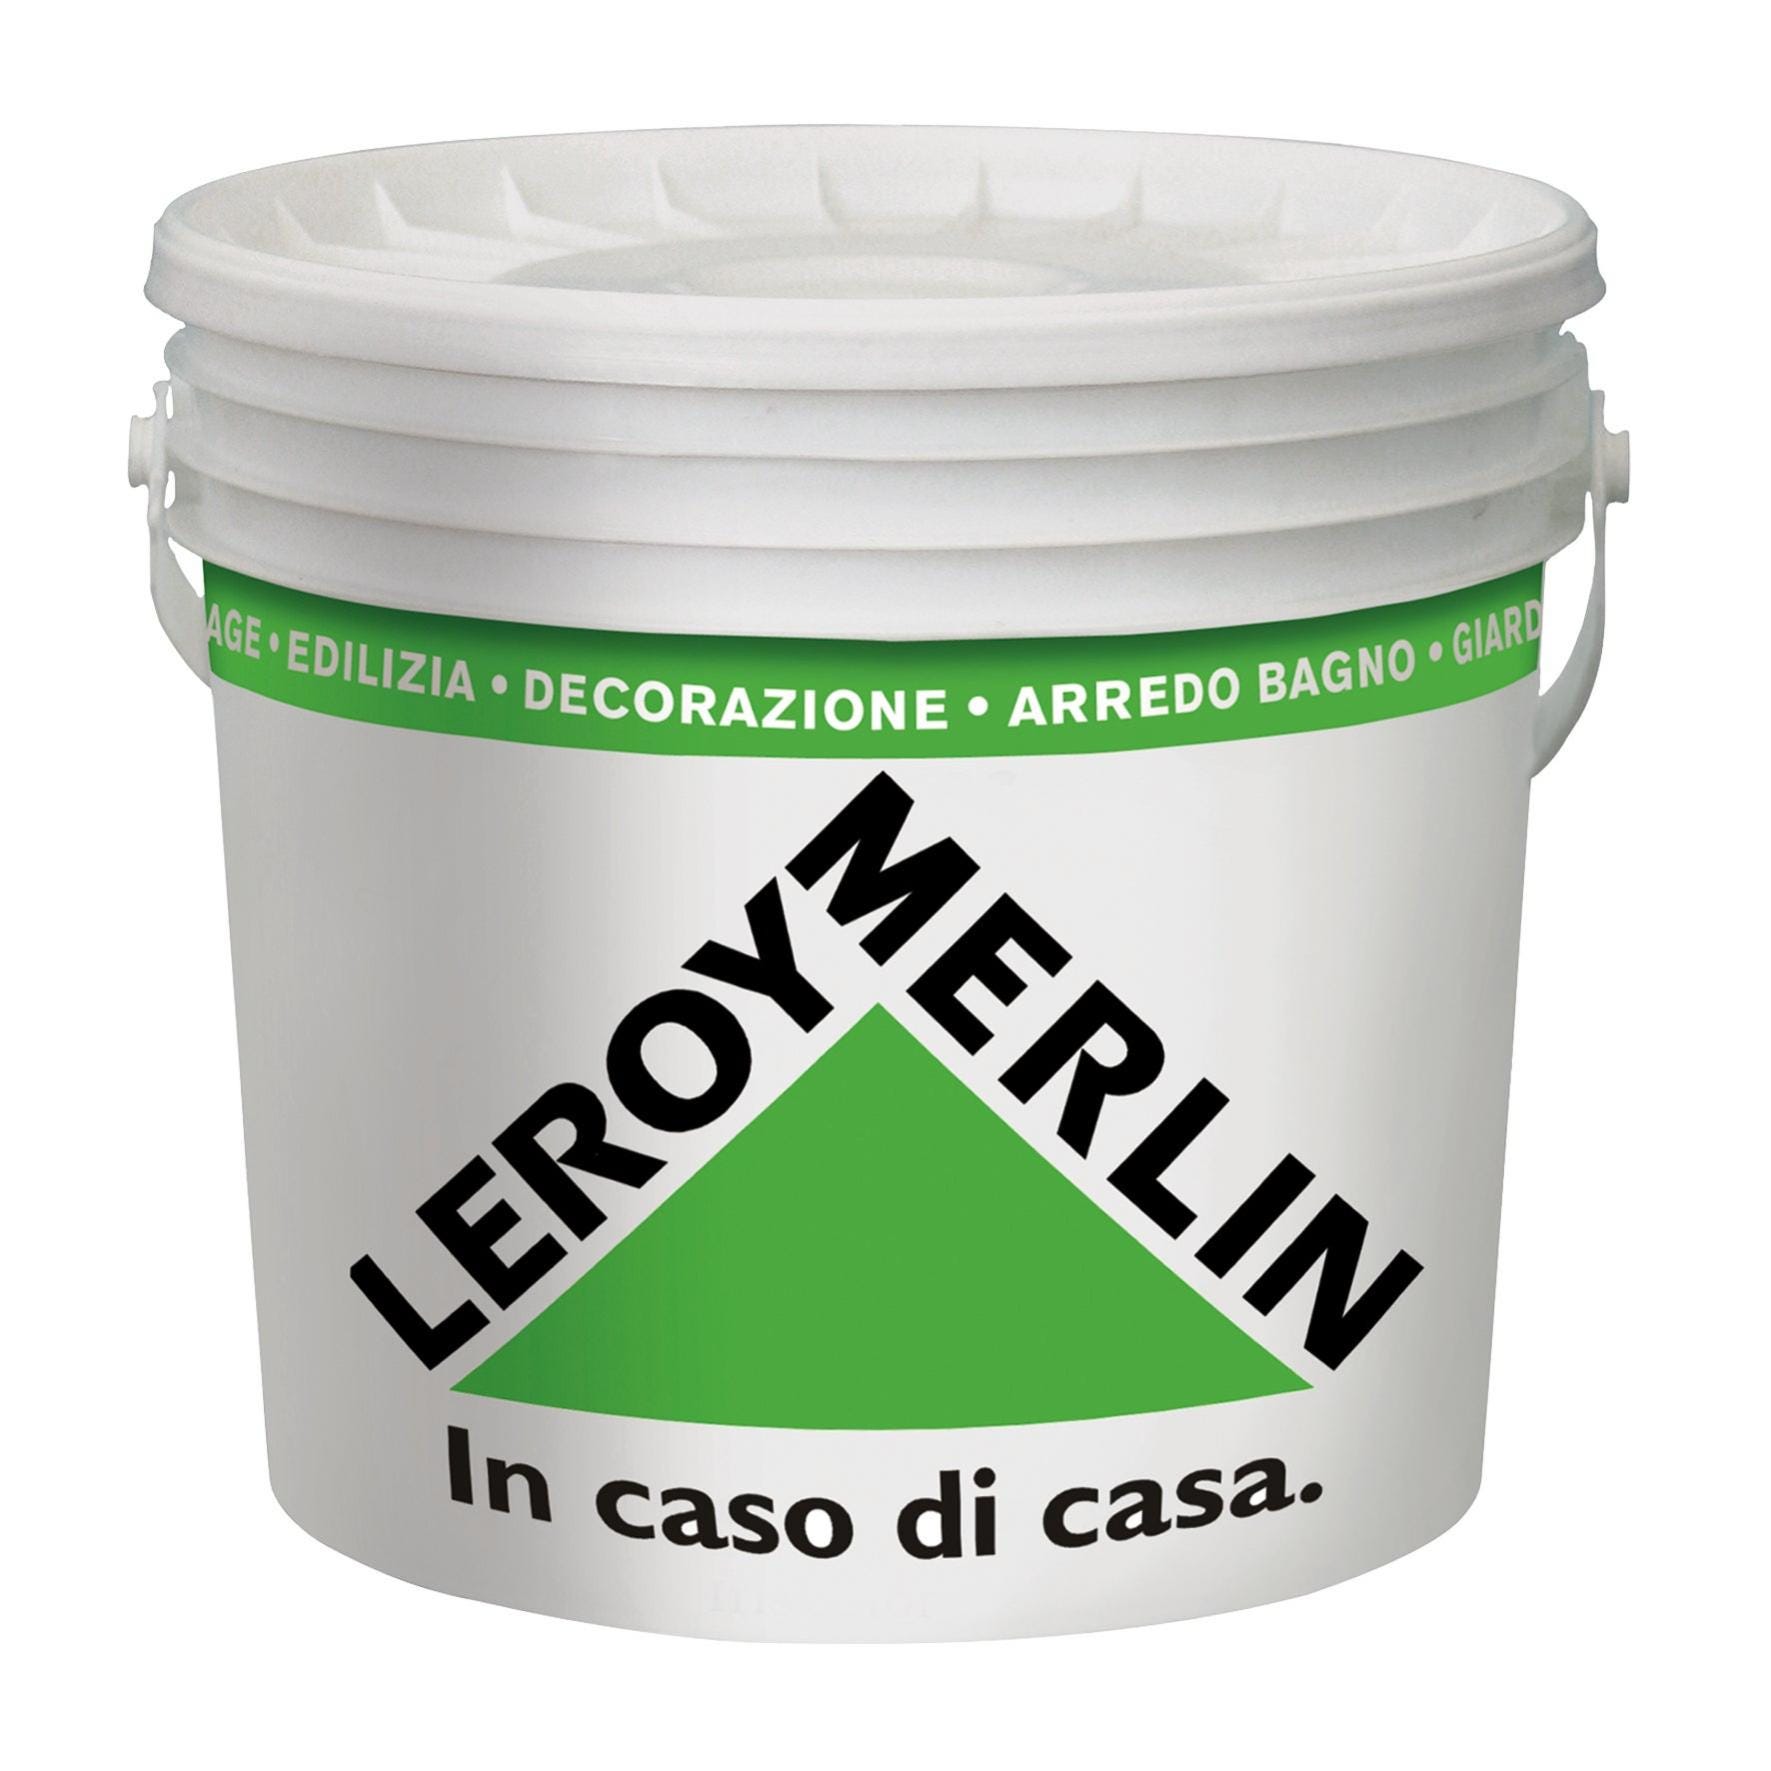 Secchio con coperchio LEROY MERLIN in polipropilene 14 L